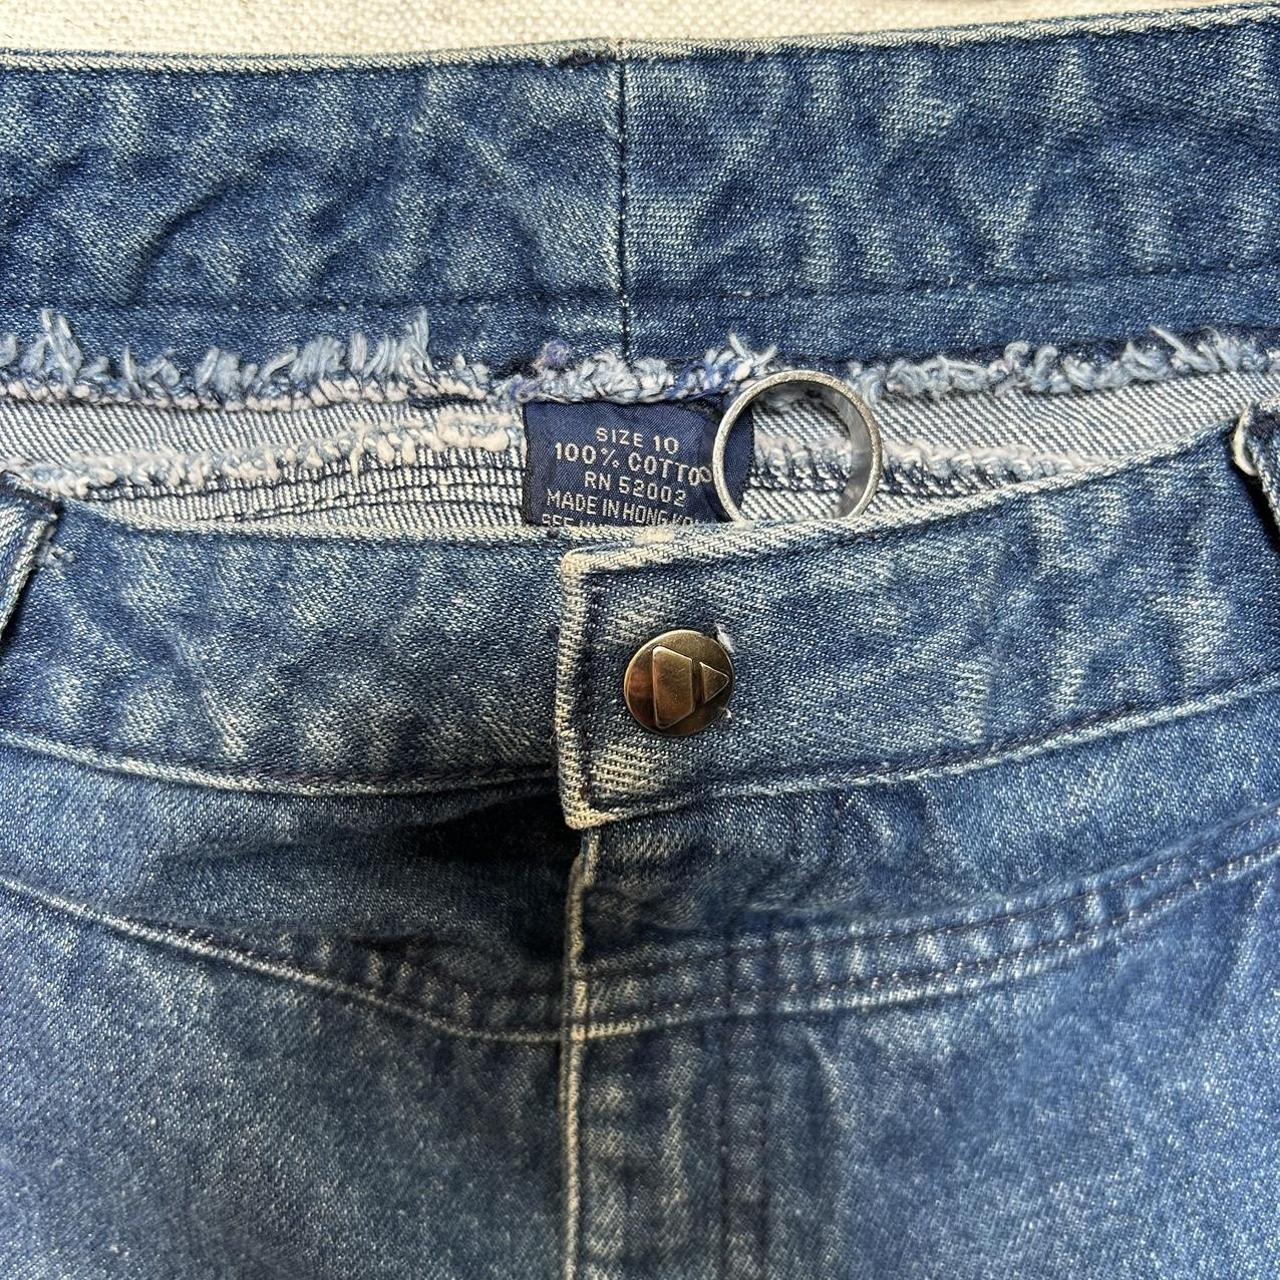 Vintage Liz Claiborne jeans Tagged size 10 woman’s... - Depop